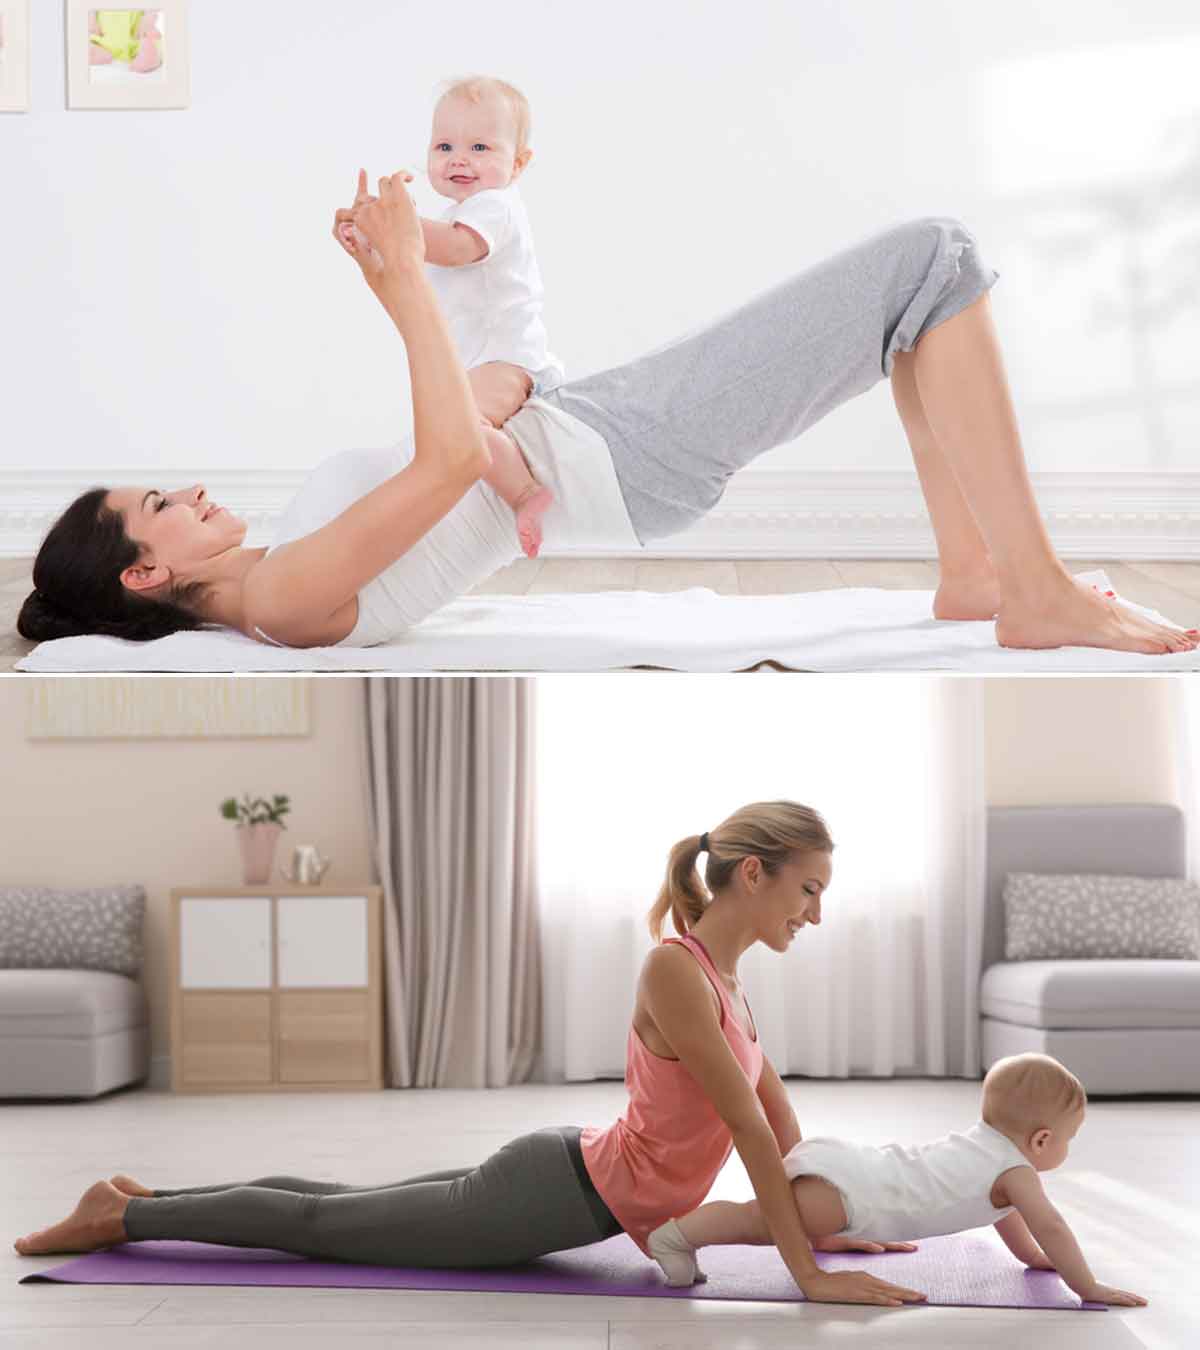 怀孕后和宝宝一起锻炼的21种有趣方法